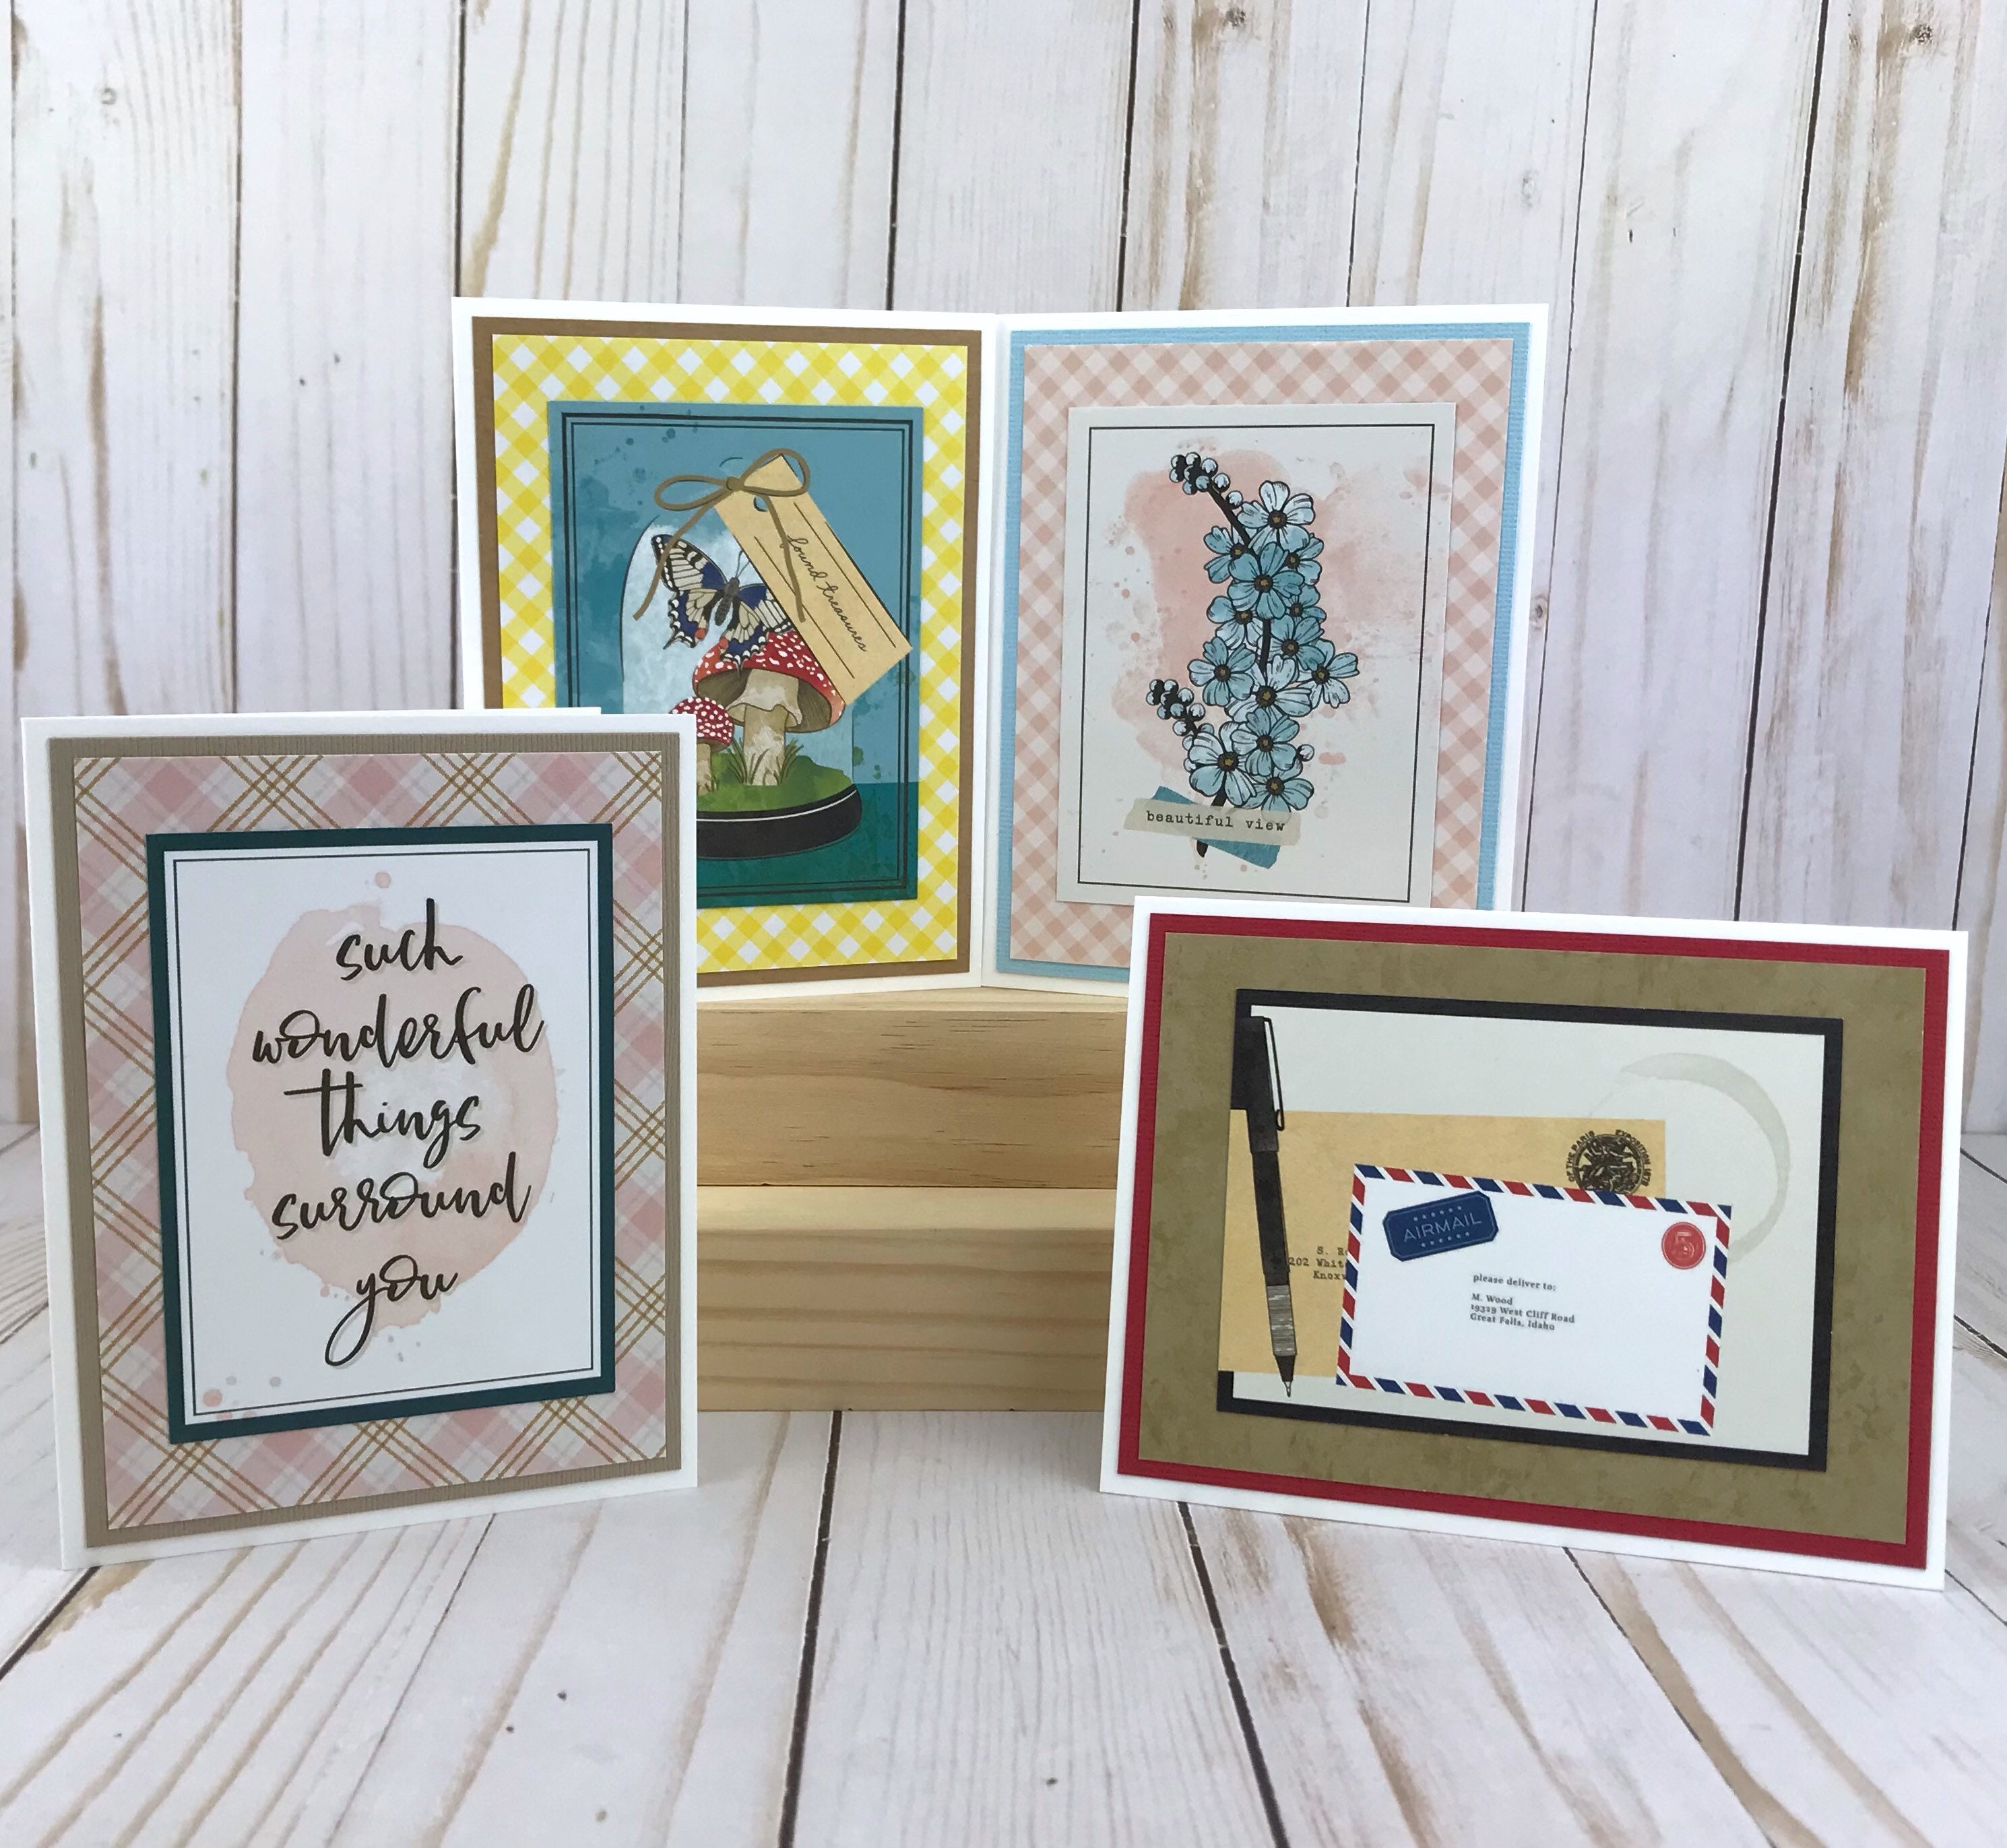 Card Making Kit for Adults, Botanical Card Kits DIY, Beginner Craft Kit,  Make Your Own Card, Summer Craft Kit, Cardmaking Supplies, Eas